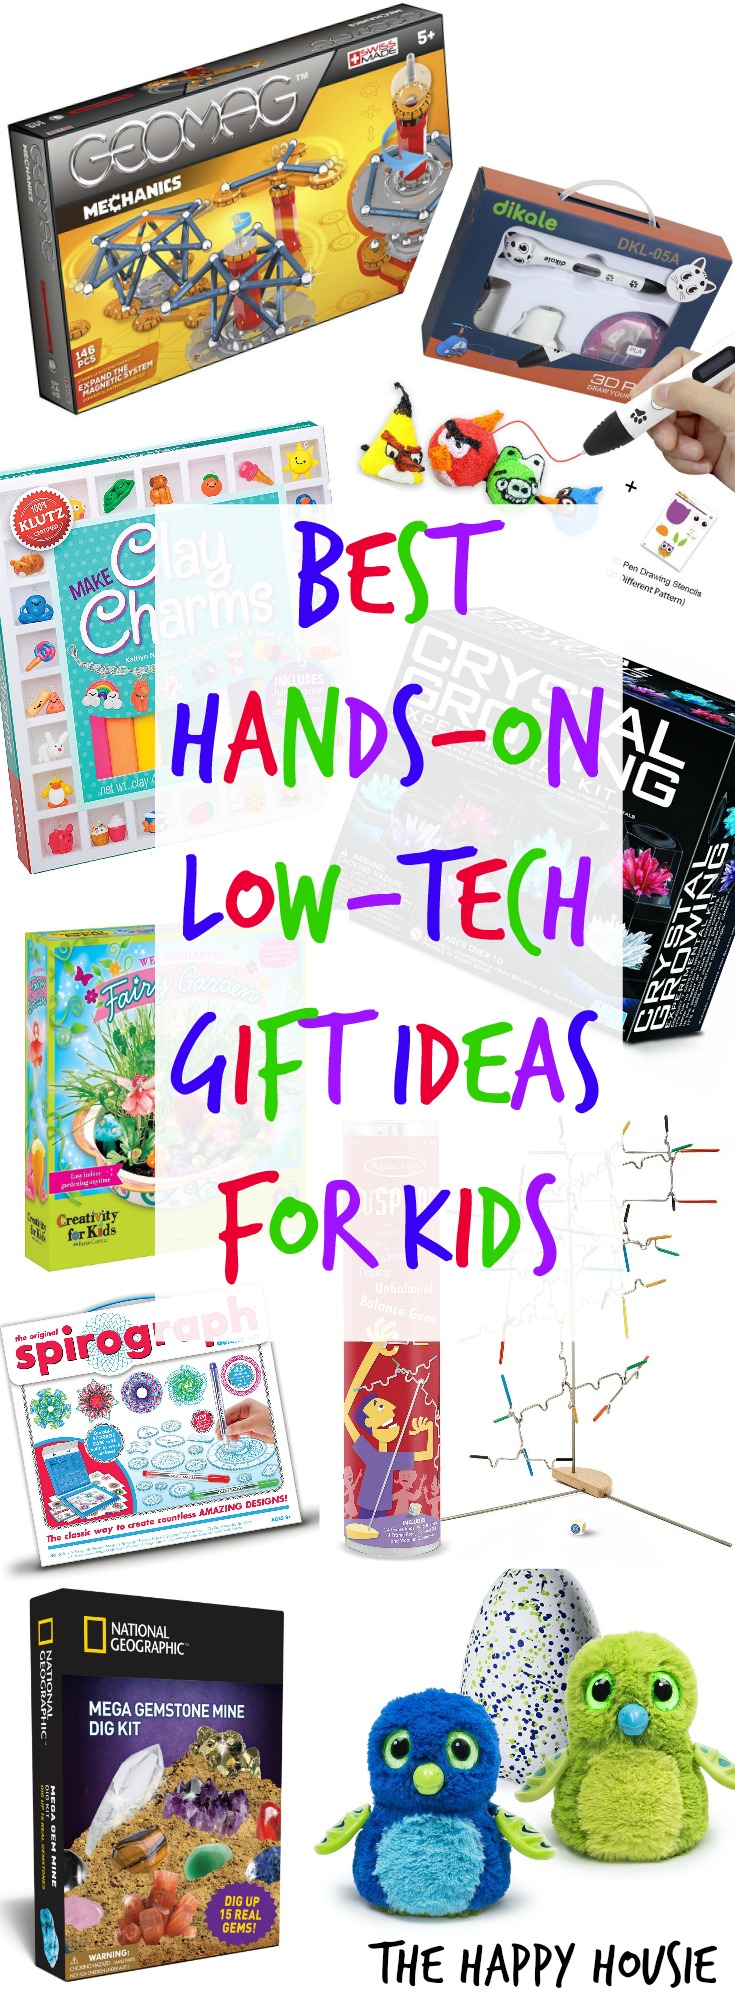 good gift ideas for kids